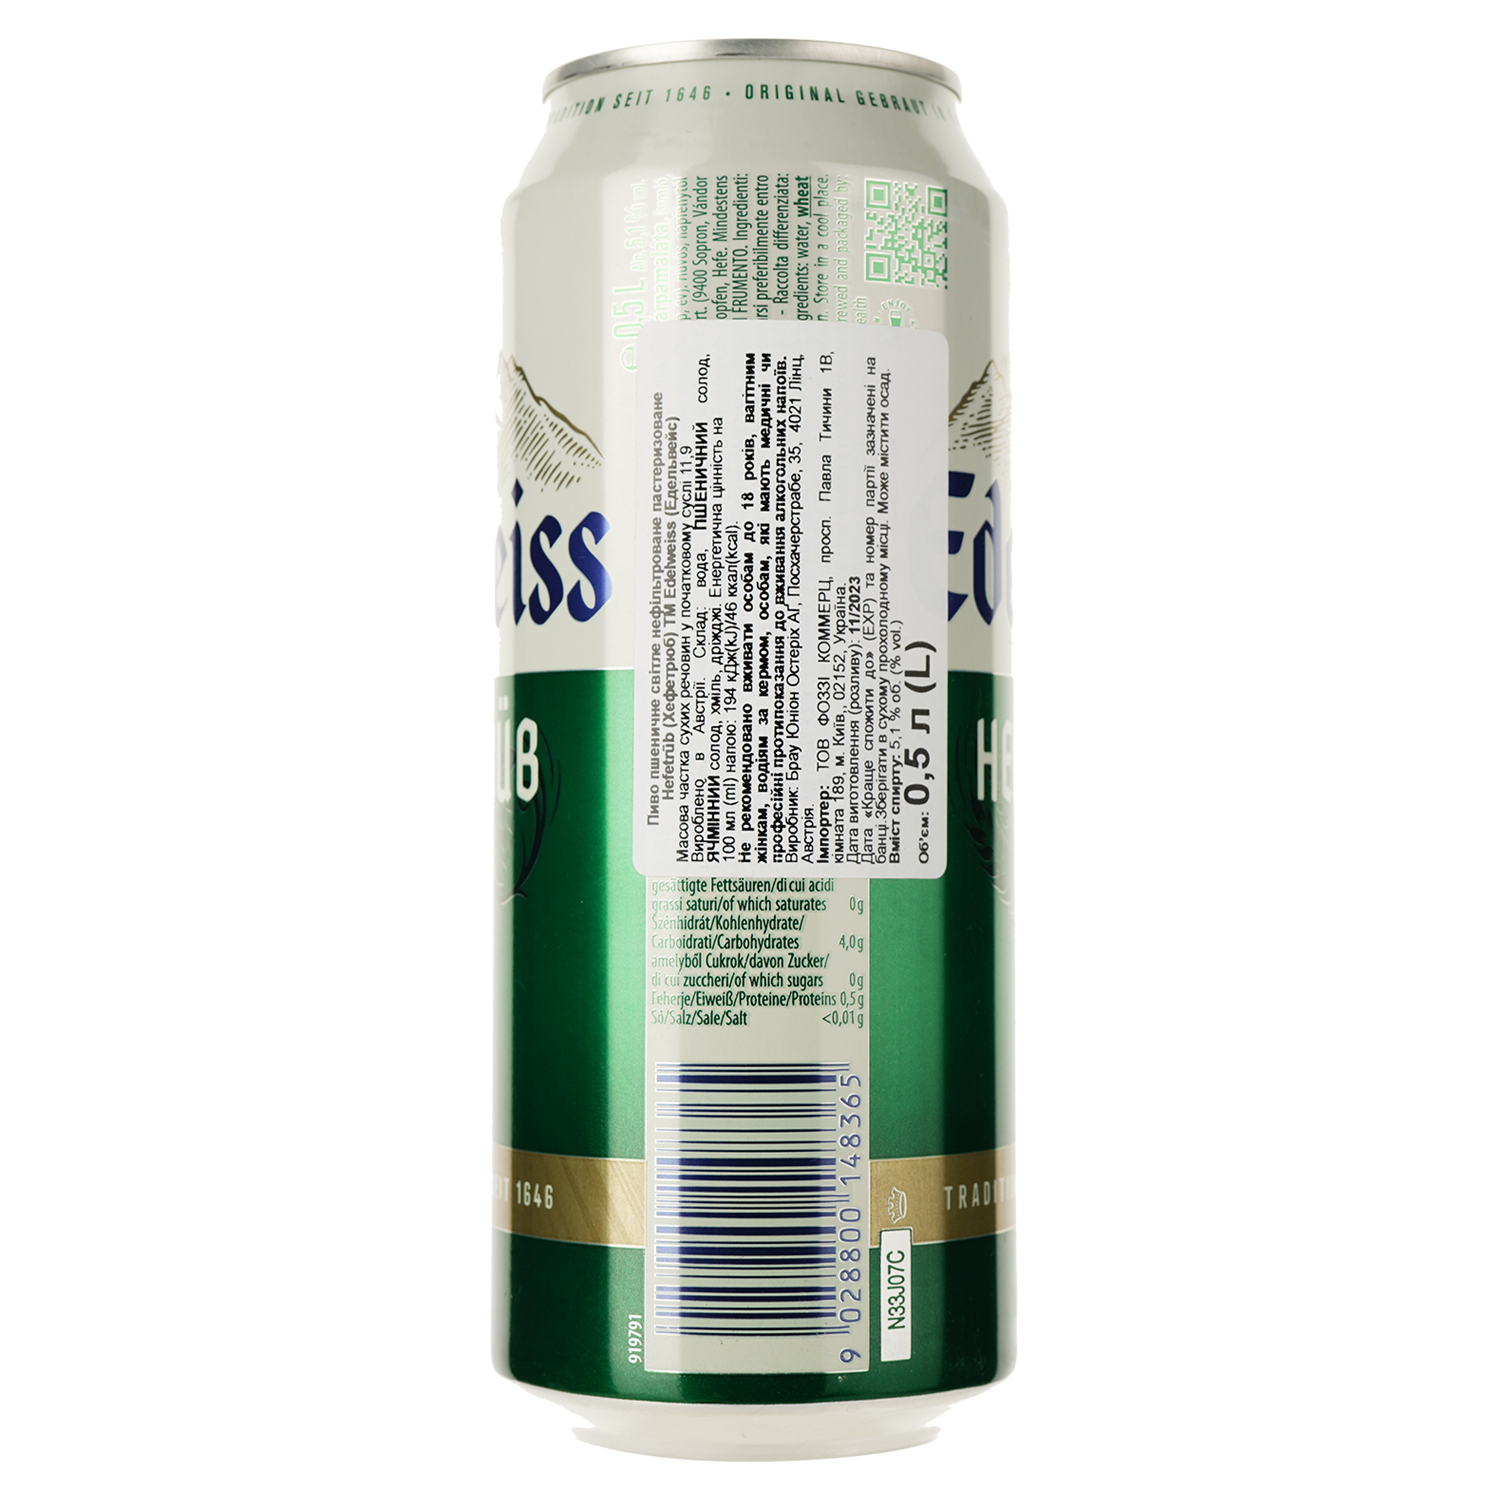 Пиво Edelweiss Weissbier Hefetrub, светлое, 5.3%, 0.5 л, ж/б - фото 2